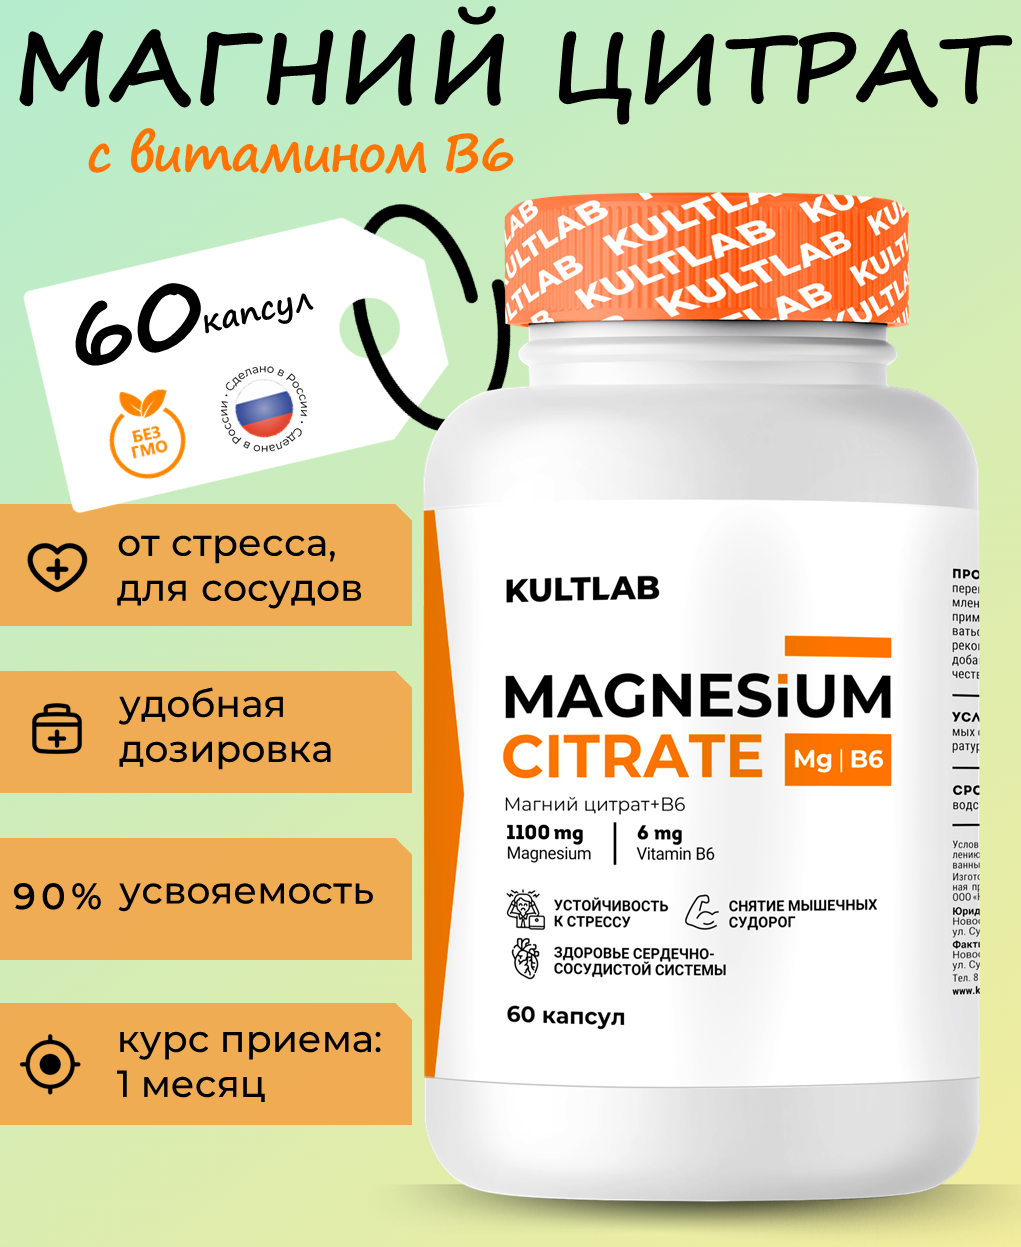 Магний цитрат (Magnesium Citrate) и витамин В6